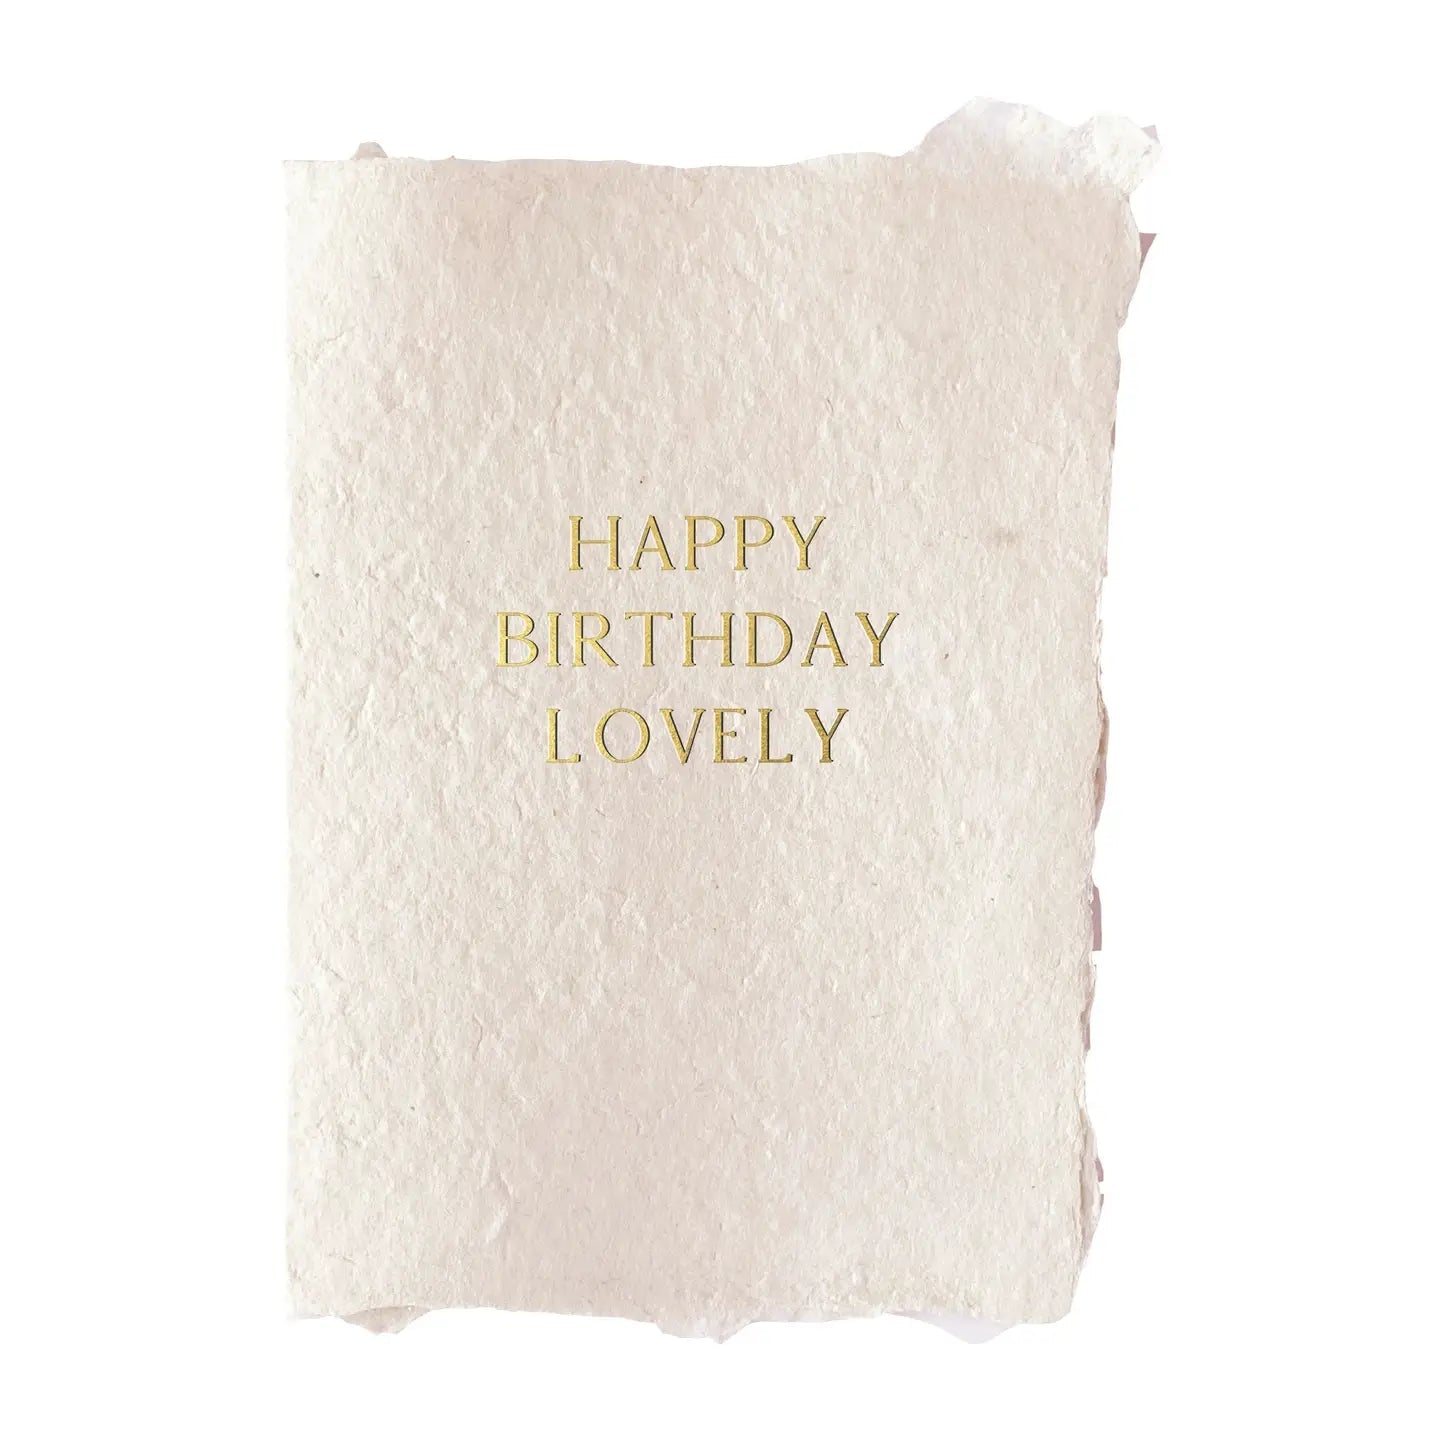 "Lovely" Gold Foil Card - Spring Sweet